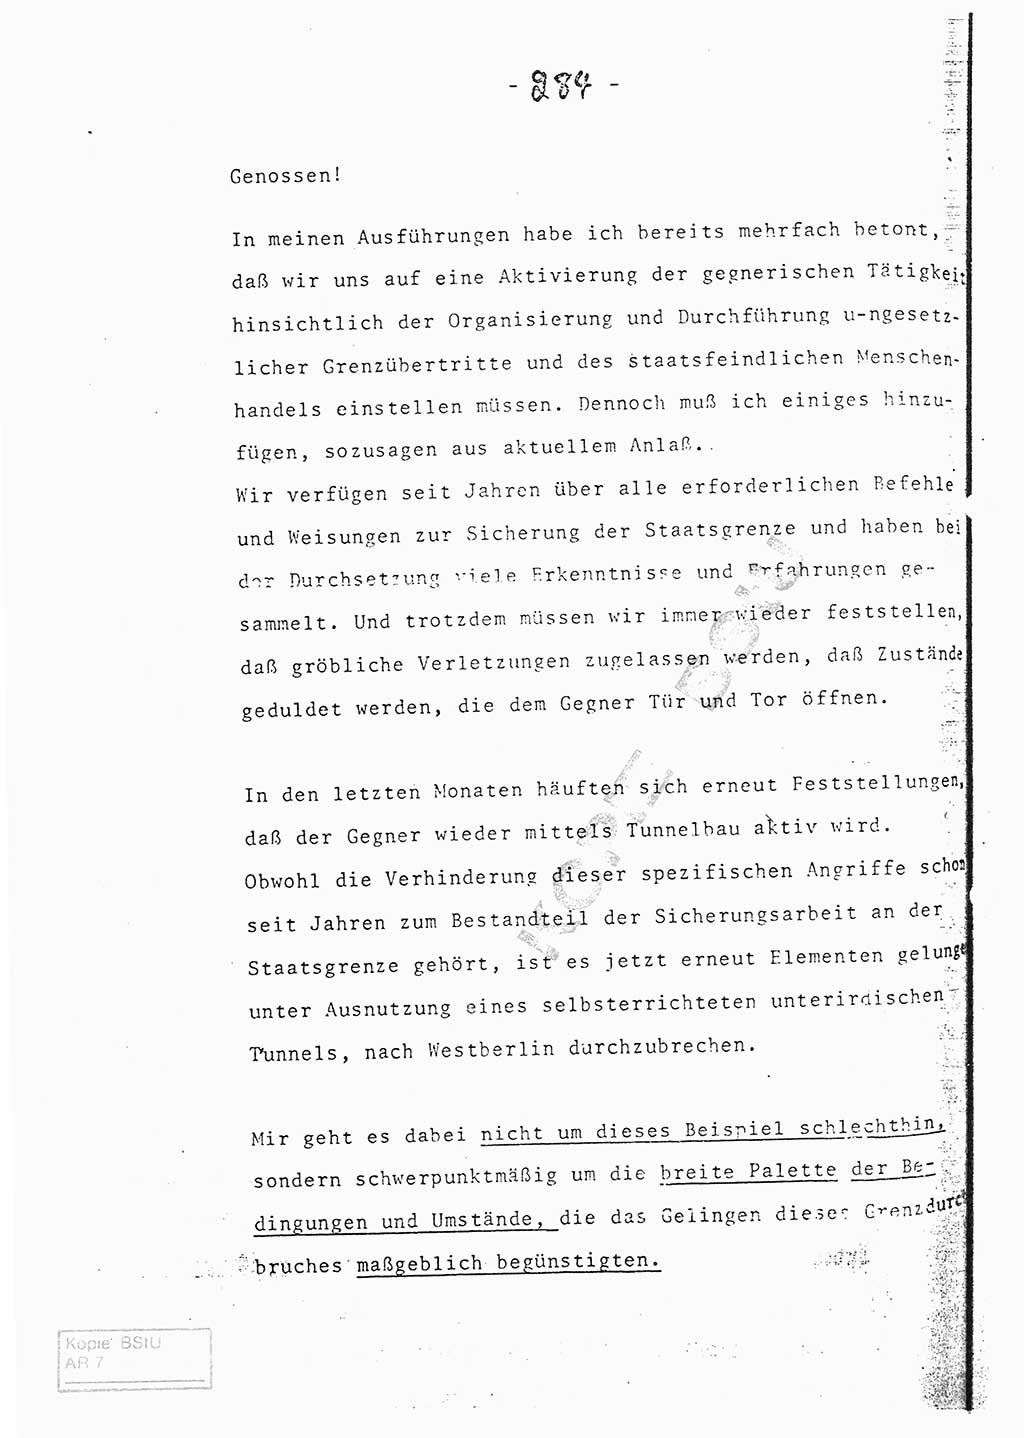 Referat (Entwurf) des Genossen Minister (Generaloberst Erich Mielke) auf der Dienstkonferenz 1972, Ministerium für Staatssicherheit (MfS) [Deutsche Demokratische Republik (DDR)], Der Minister, Geheime Verschlußsache (GVS) 008-150/72, Berlin 25.2.1972, Seite 284 (Ref. Entw. DK MfS DDR Min. GVS 008-150/72 1972, S. 284)